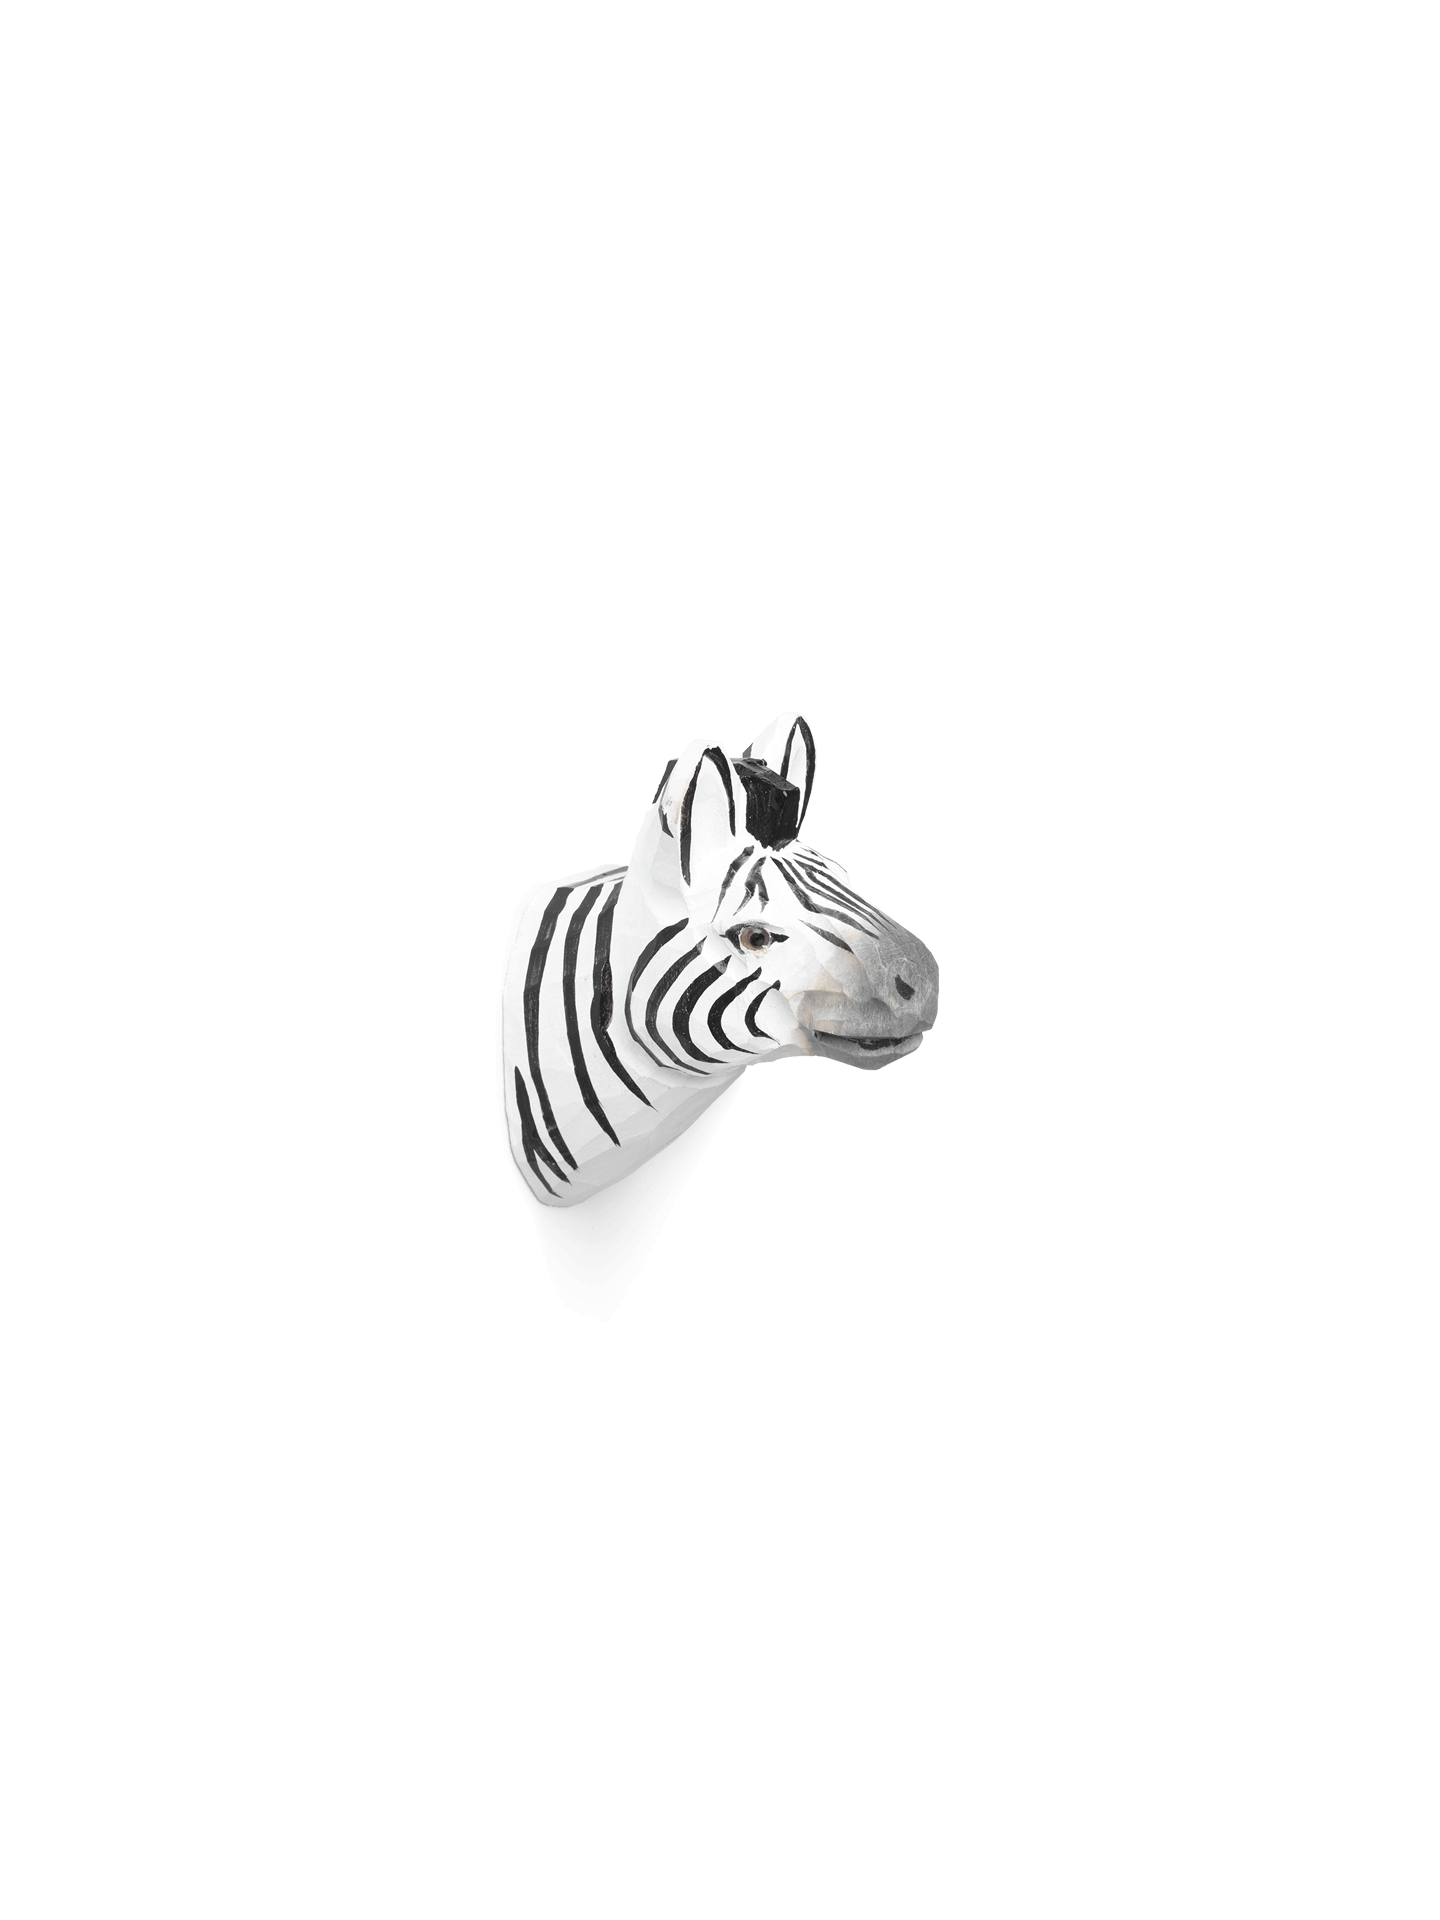 Cuier sculptat manual Ferm Living - Zebra